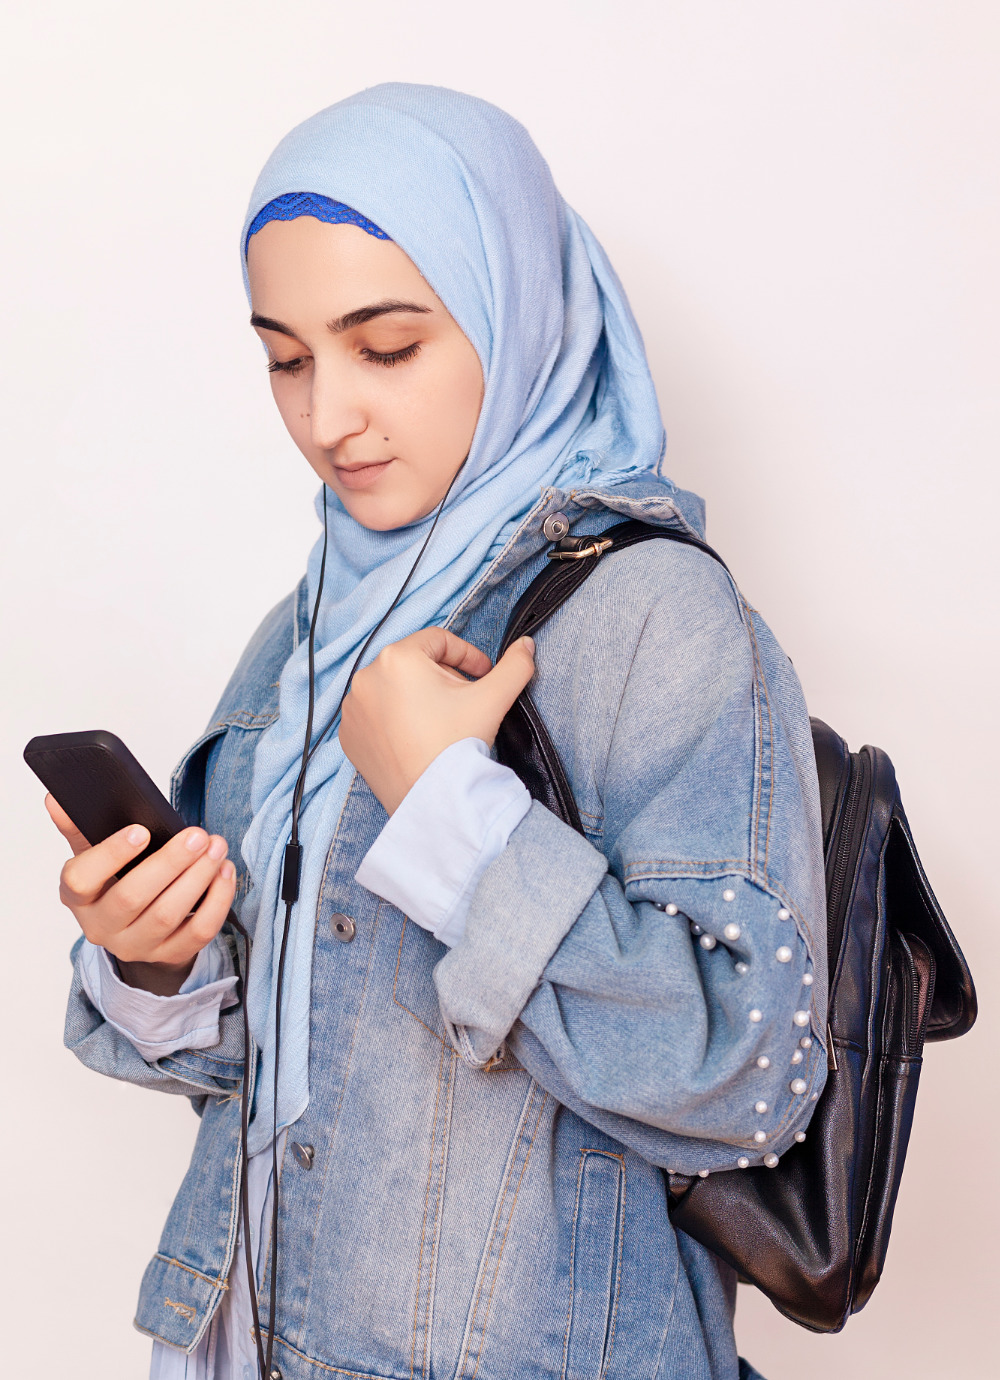 في رمضان هذا العام ، عزز معرفتك من خلال الاستماع إلى بعض المدونات الصوتية التعليمية والتعليمية.  (صراع الأسهم)